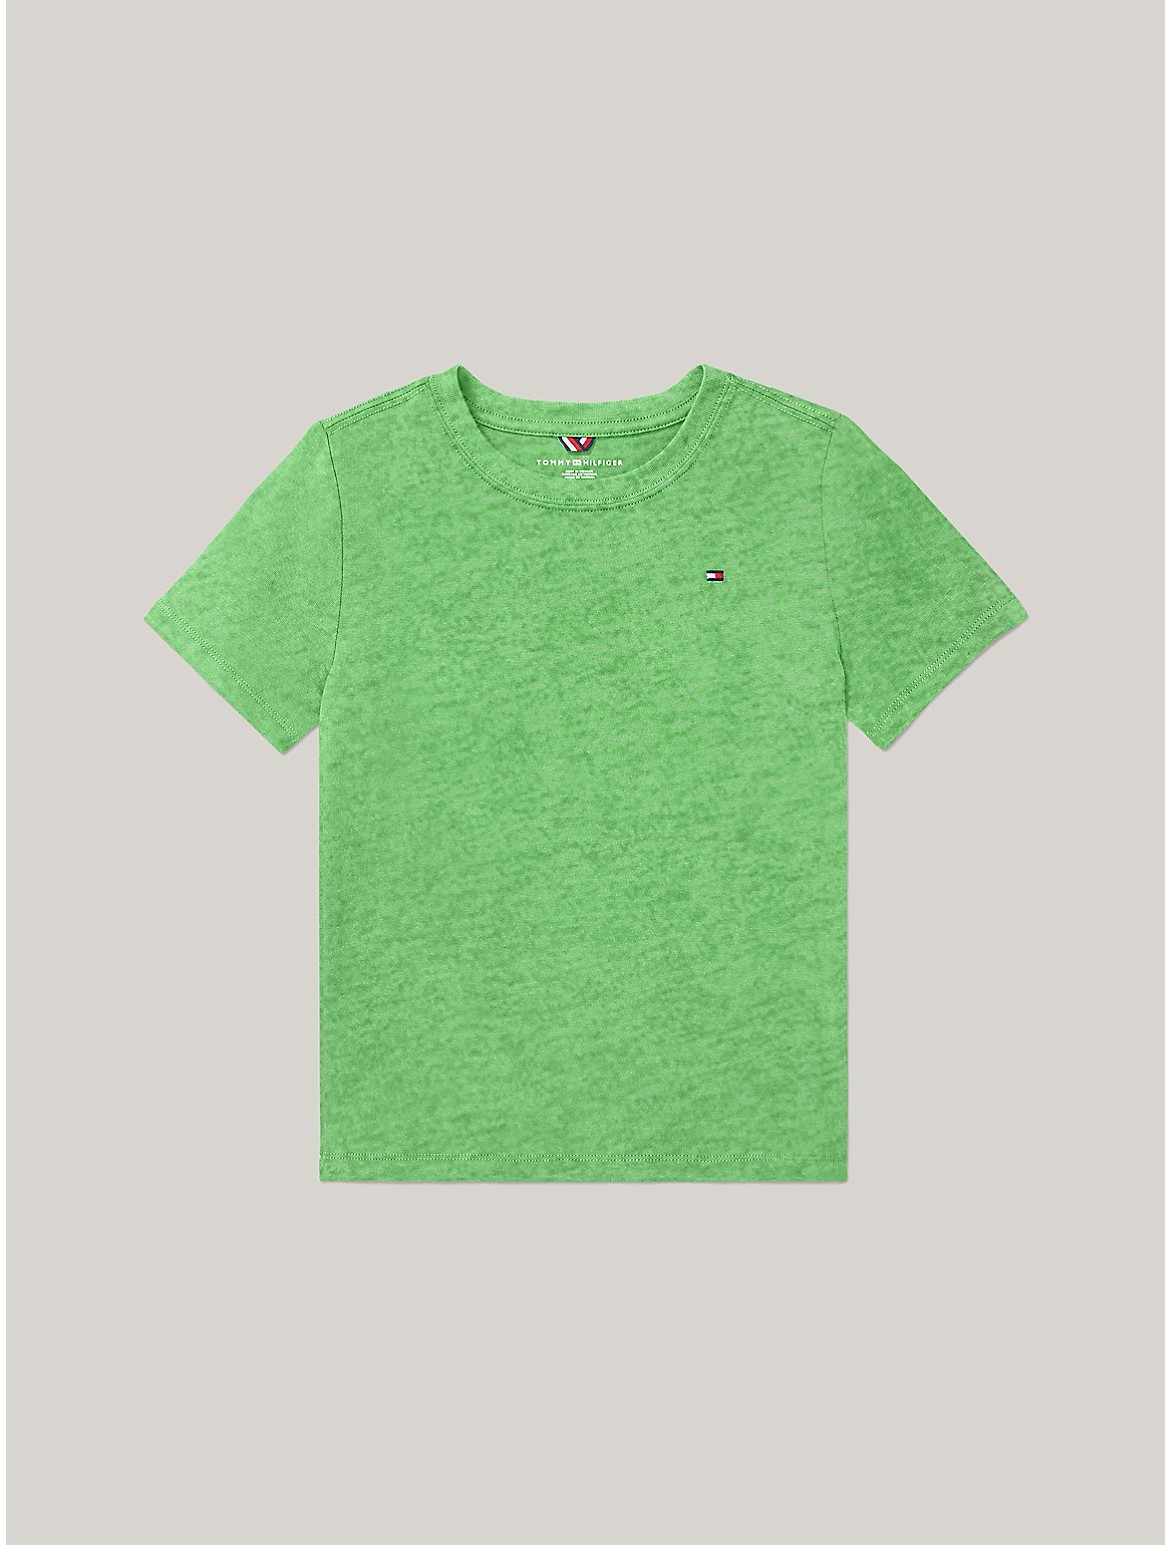 Tommy Hilfiger Kids' Solid Crewneck T-Shirt